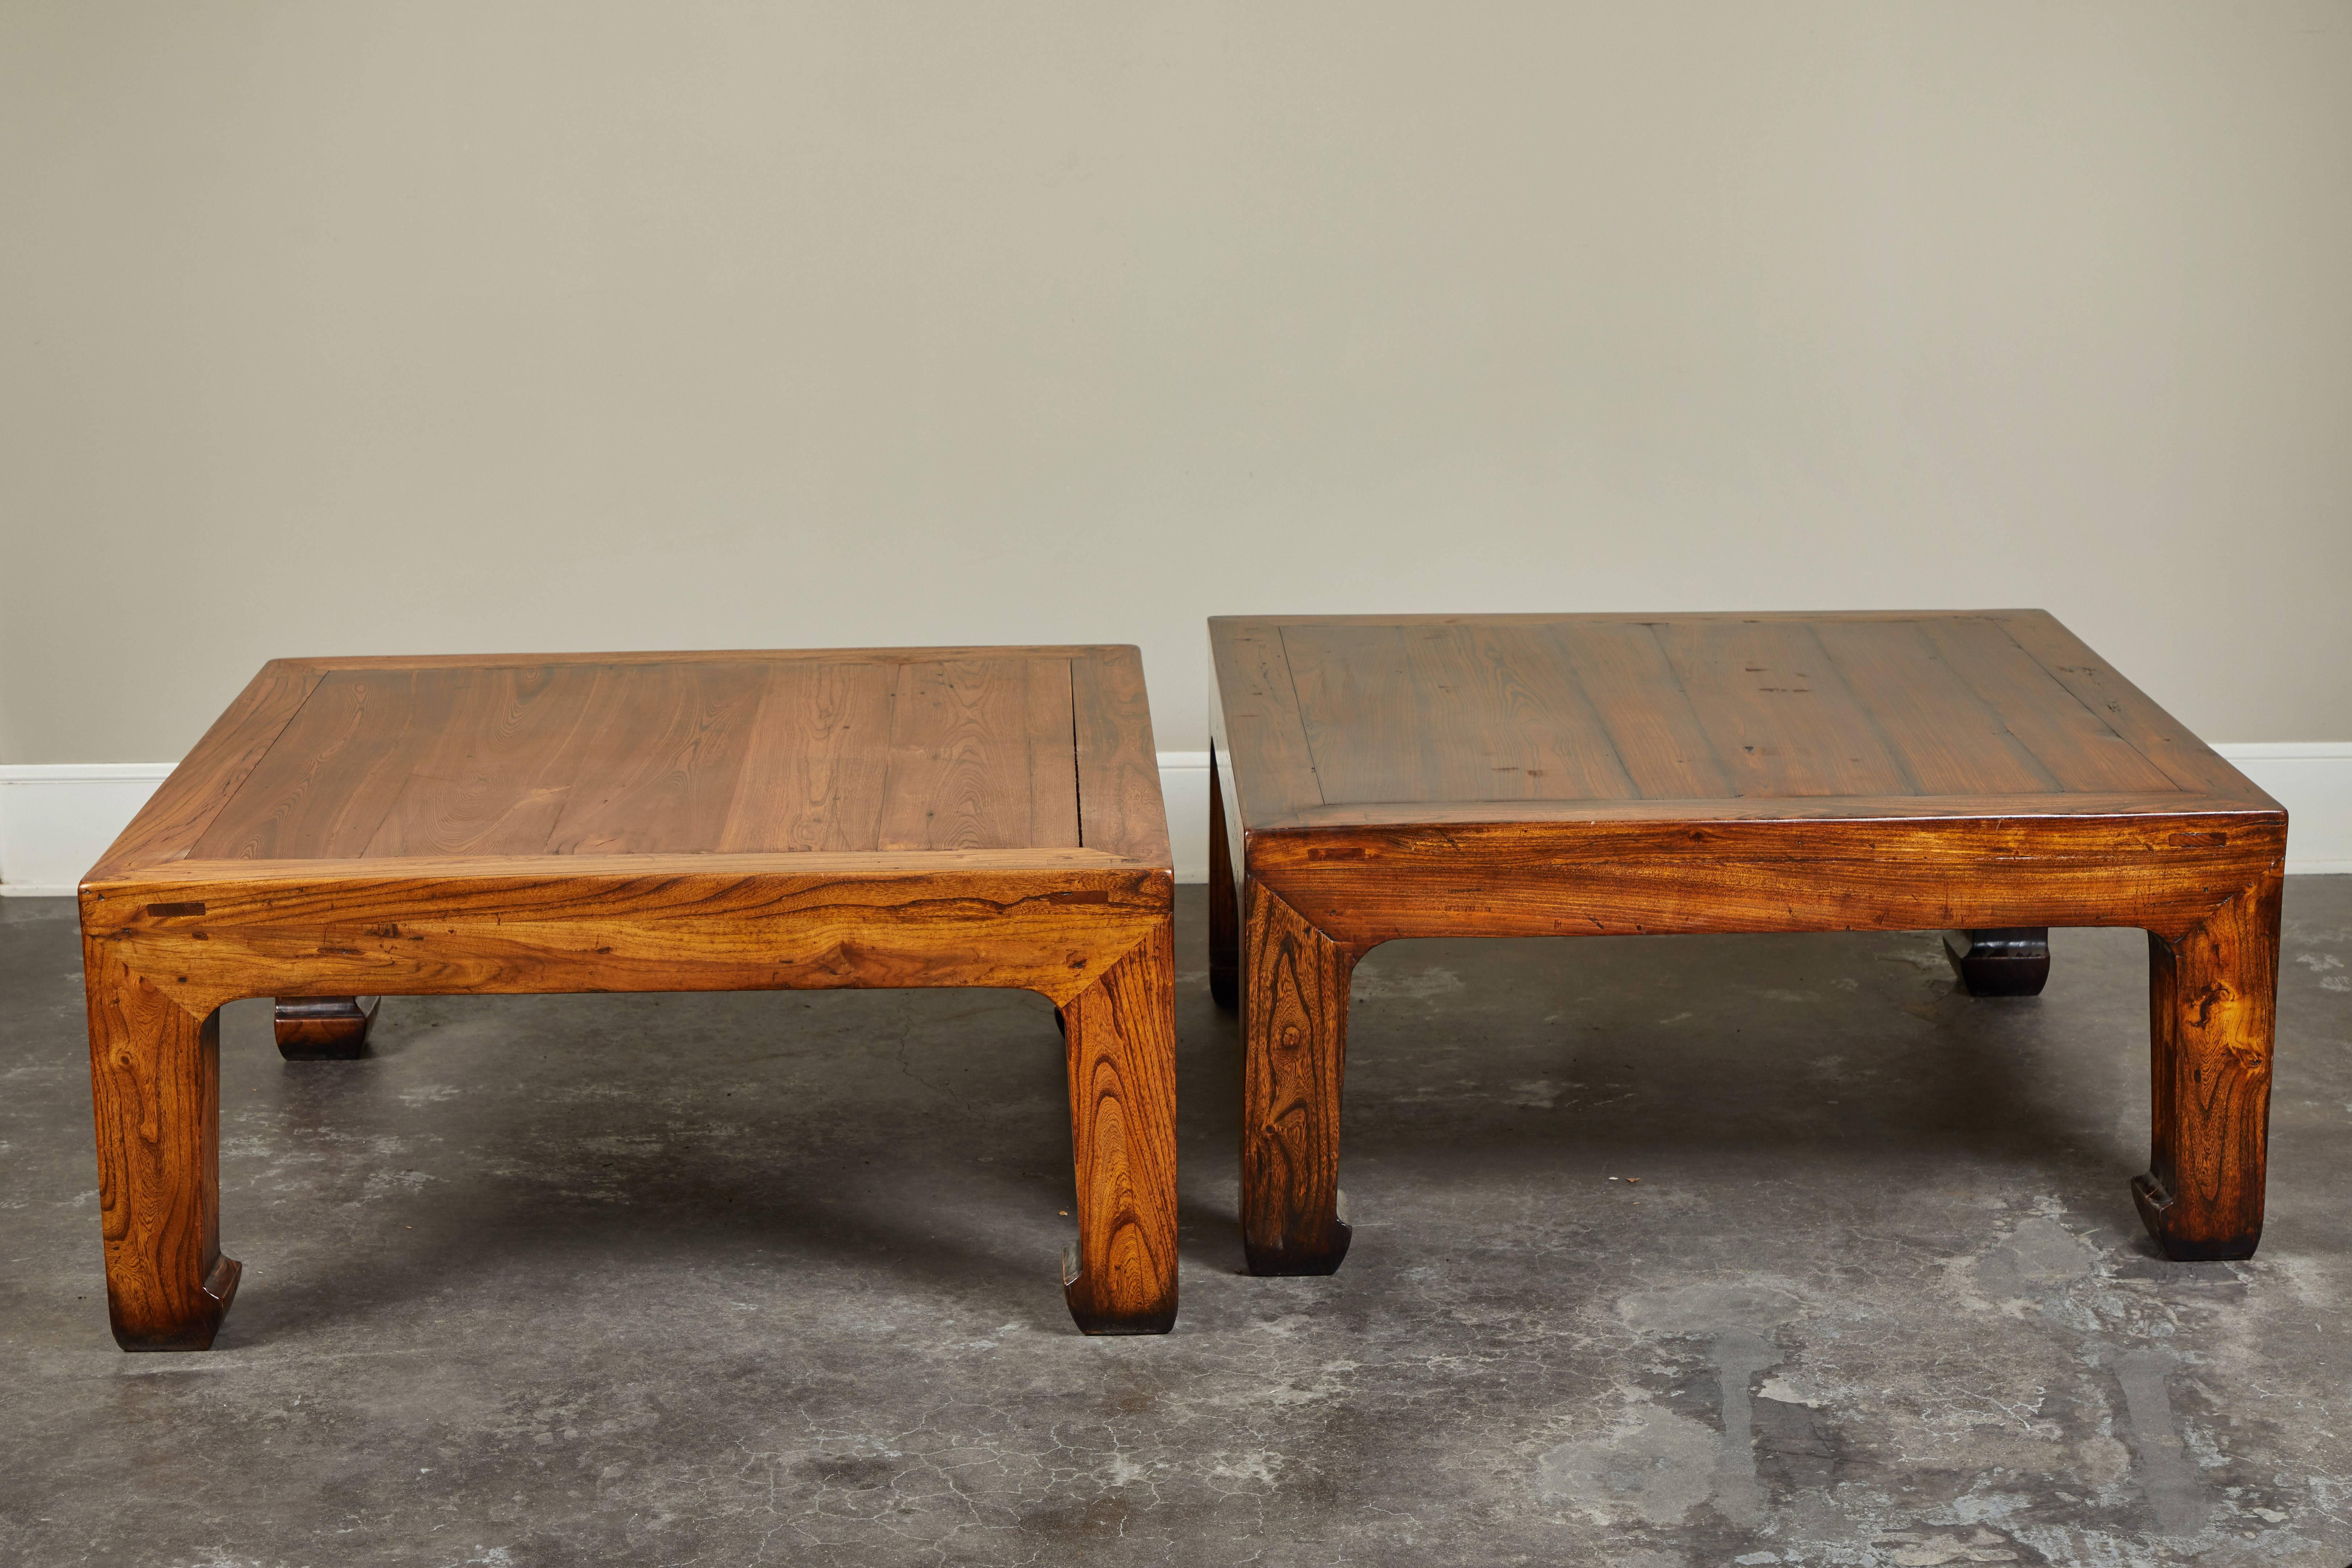 L'une des deux tables en orme nouvellement fabriquées, réimaginées à partir de pièces récupérées d'un lit ancien. Peut être jumelé avec une pièce similaire (PB2186), mais pas une paire exacte.